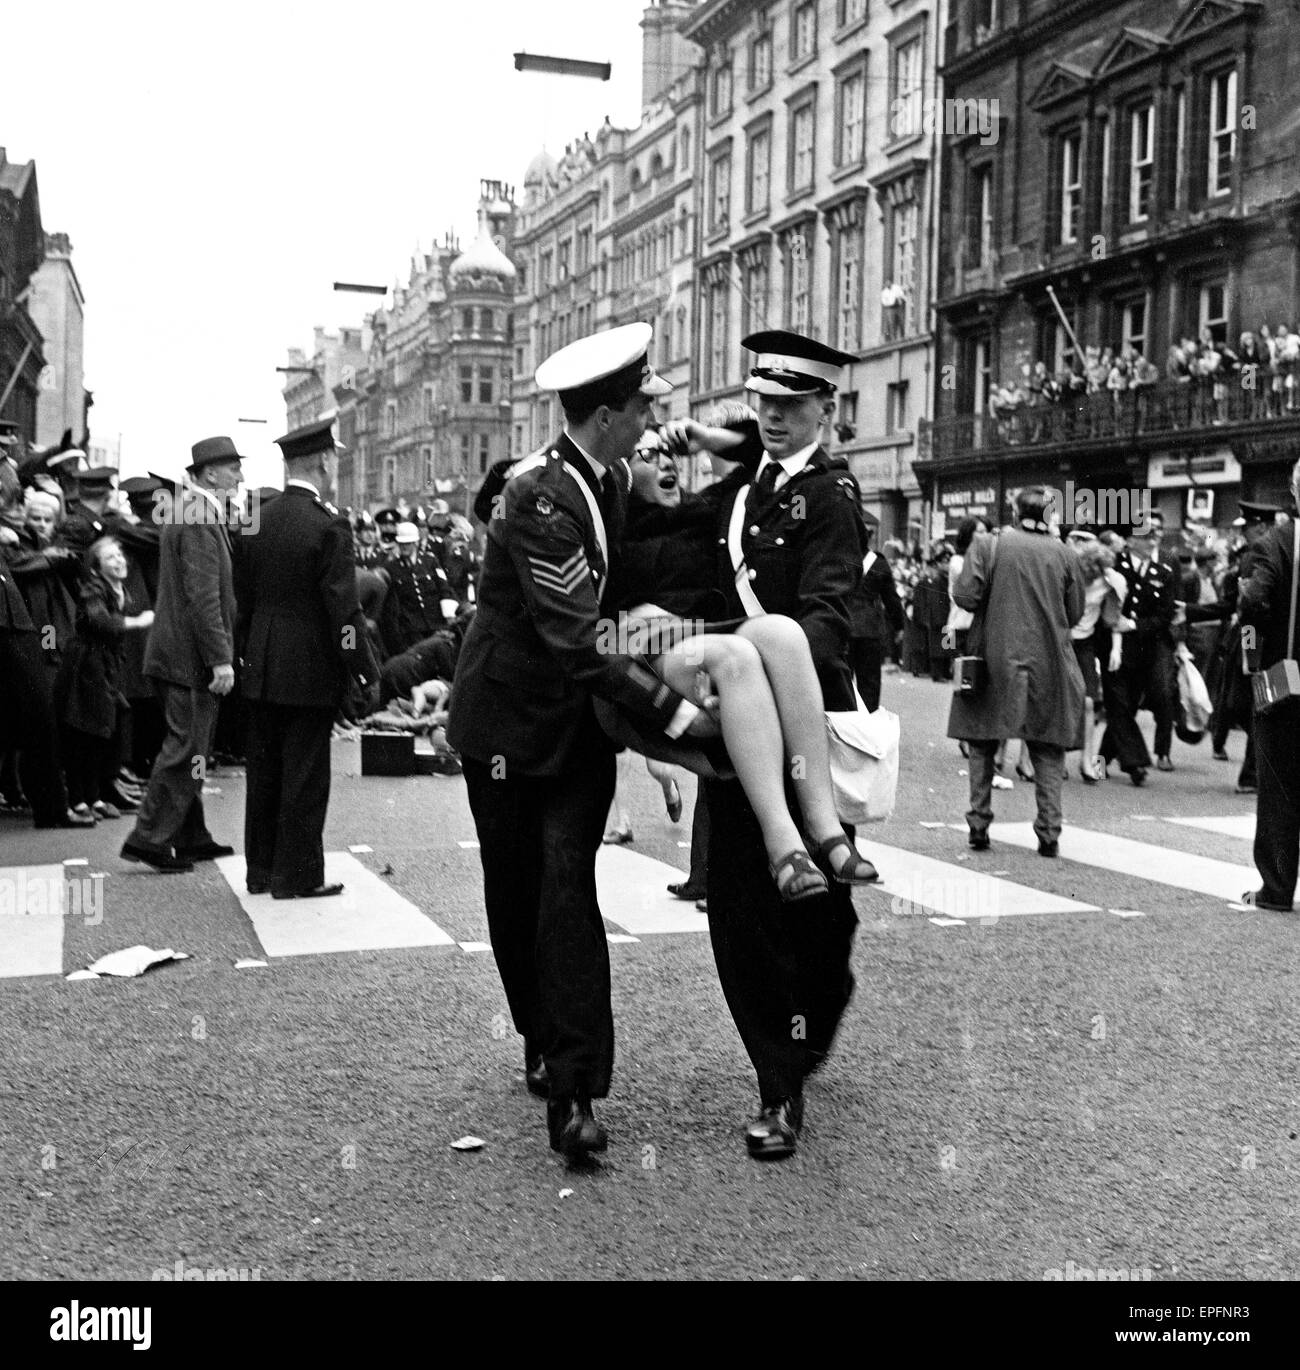 Northern Premier von The Beatles-Film "A Hard Day Night". Polizei versuchen, die Fans in den Straßen von Liverpool zu kontrollieren, abgebildet hier 2 Polizisten tragen eine verletzte Fan. 10. Juli 1964. Stockfoto